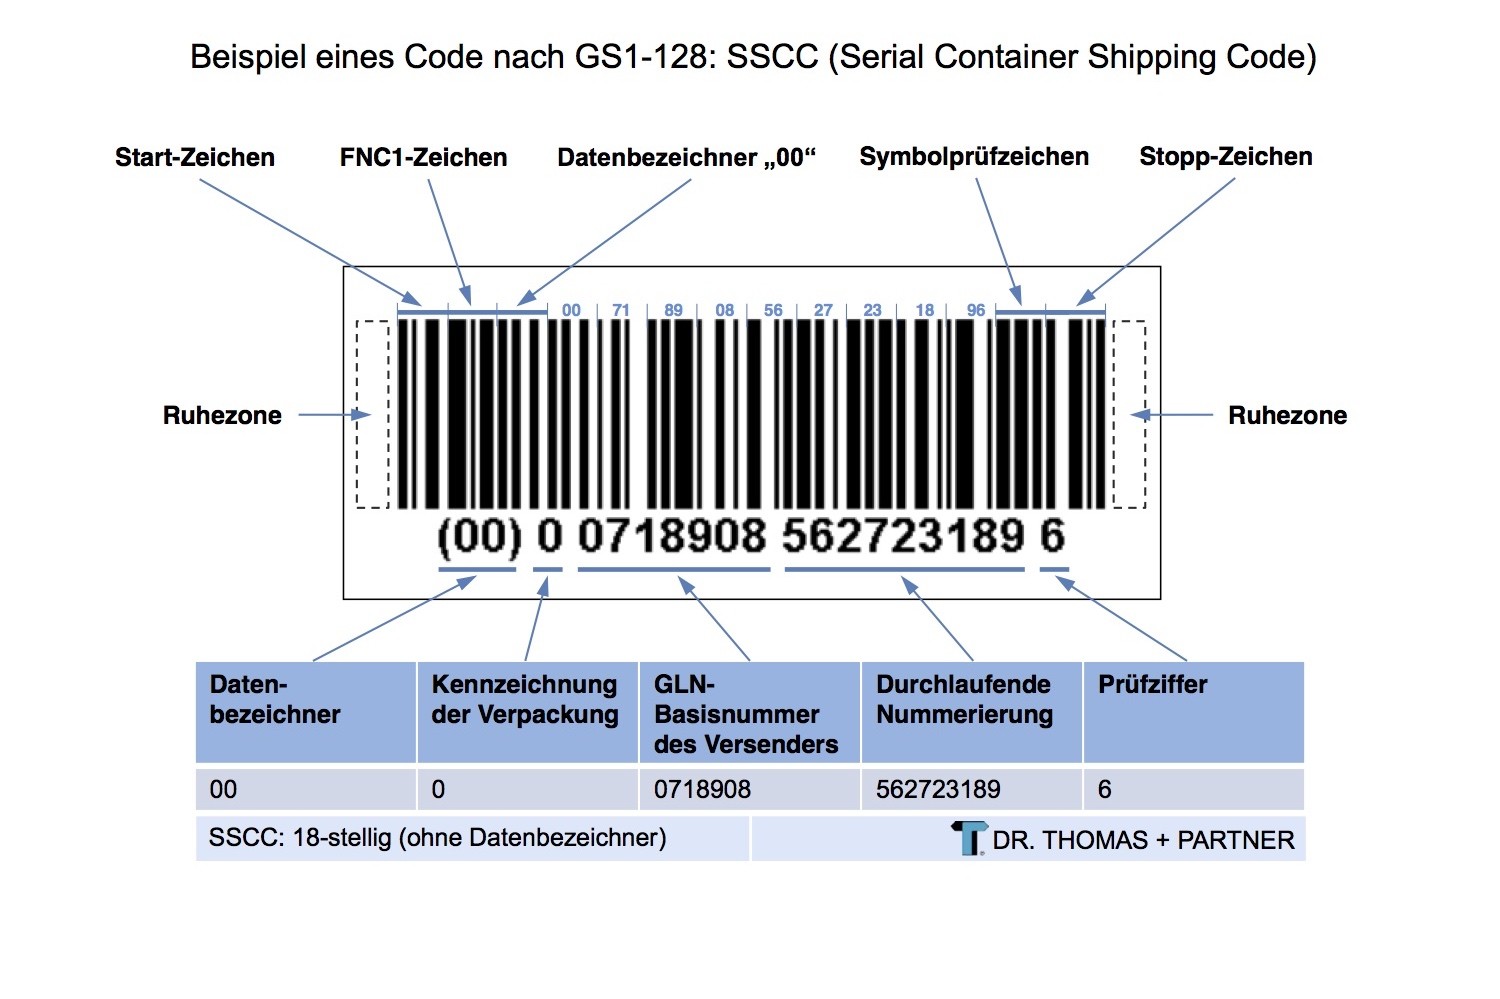 Серийный код транспортной упаковки SSCC